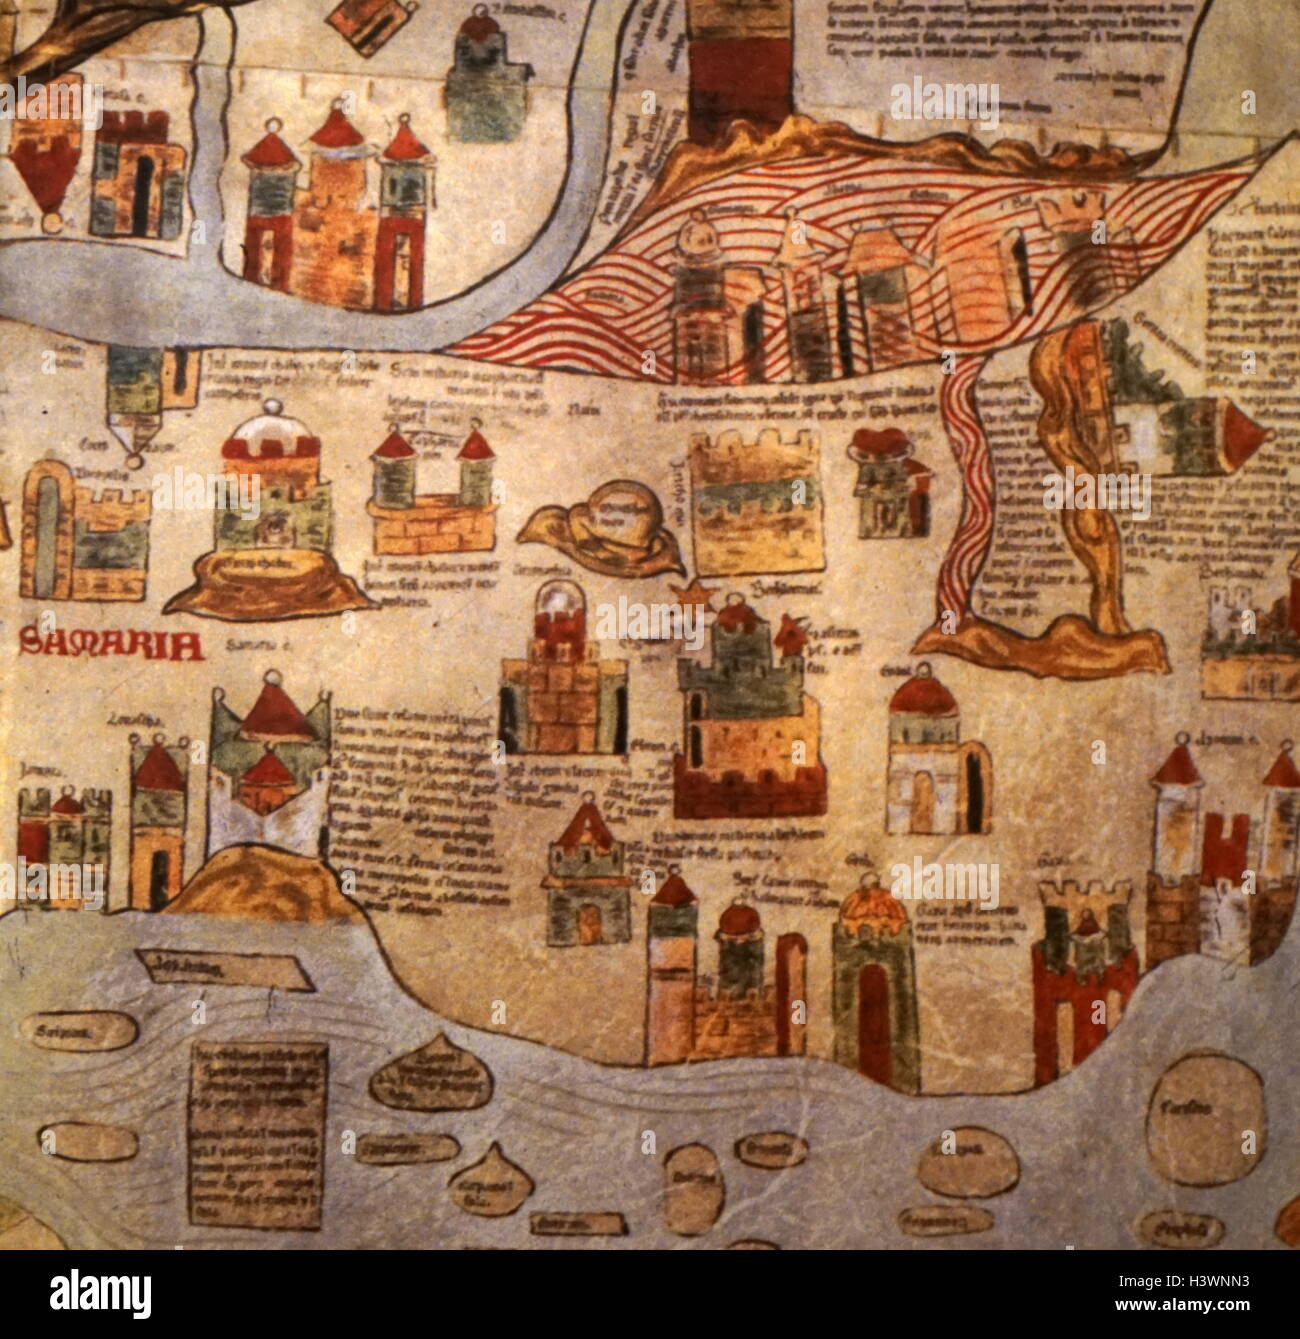 Una dettagliata mappa medievale del mondo come era conosciuto. Datato xiv secolo Foto Stock